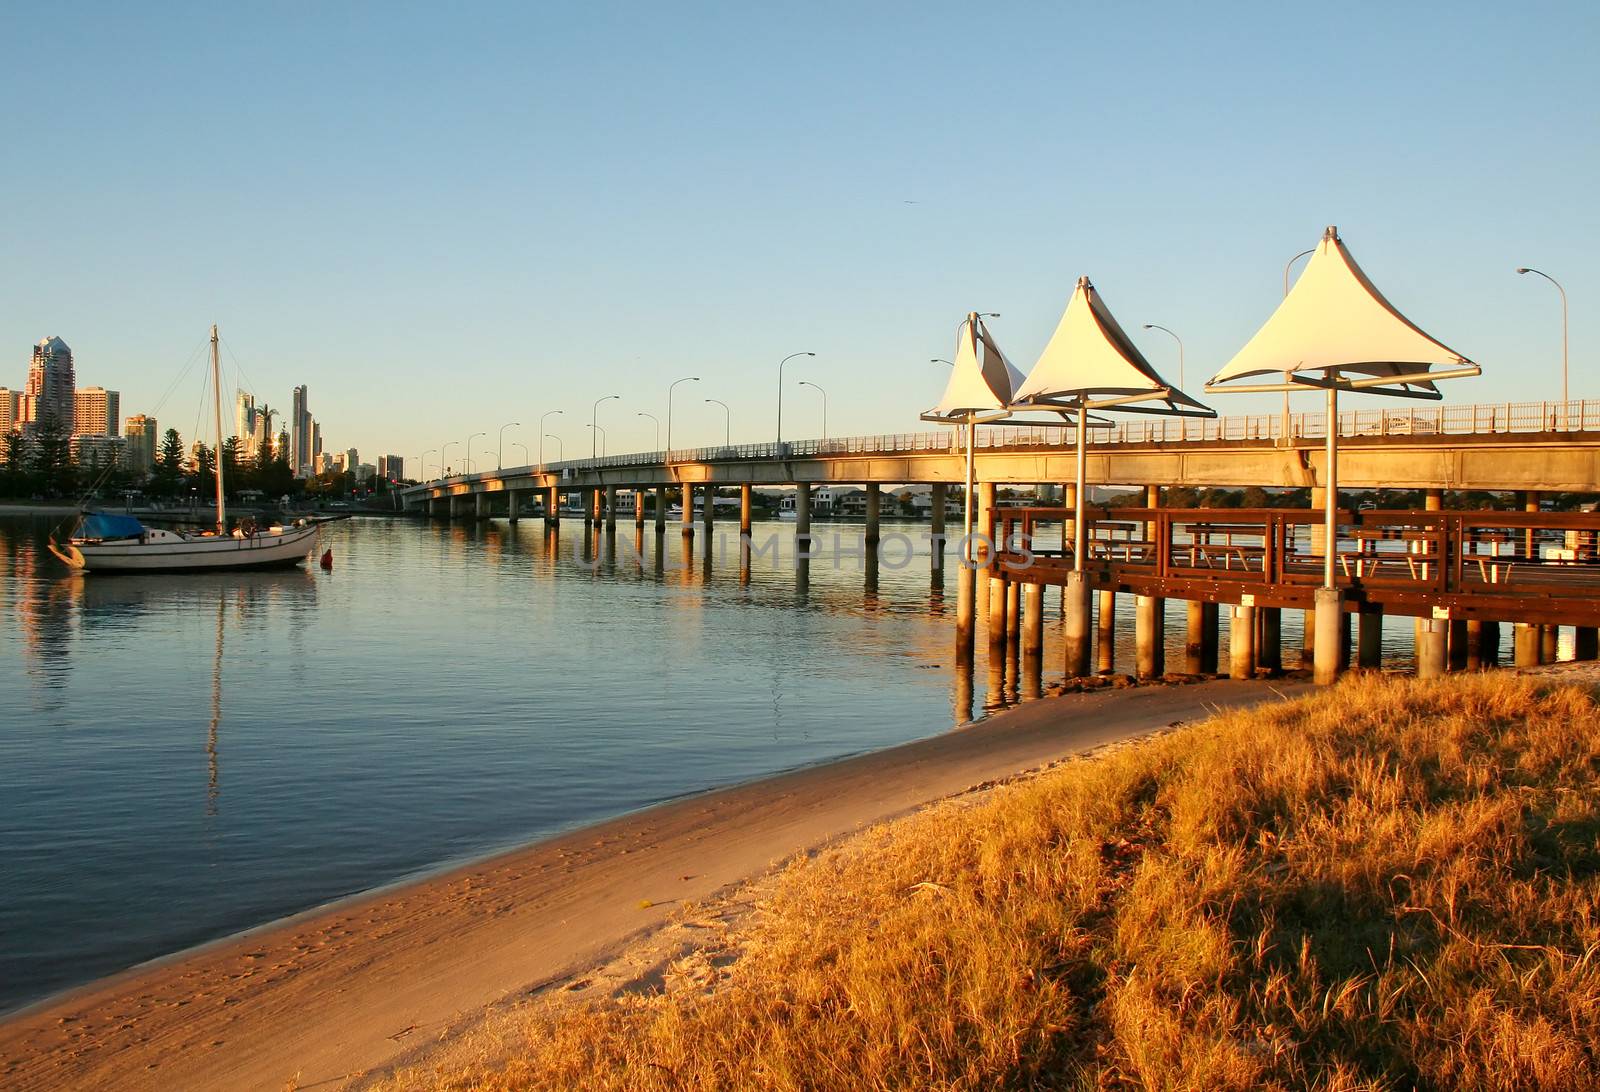 Shade sails at dawn at Southport Gold Coast Australia at the Sundale Bridge looking toward Surfers Paradise.